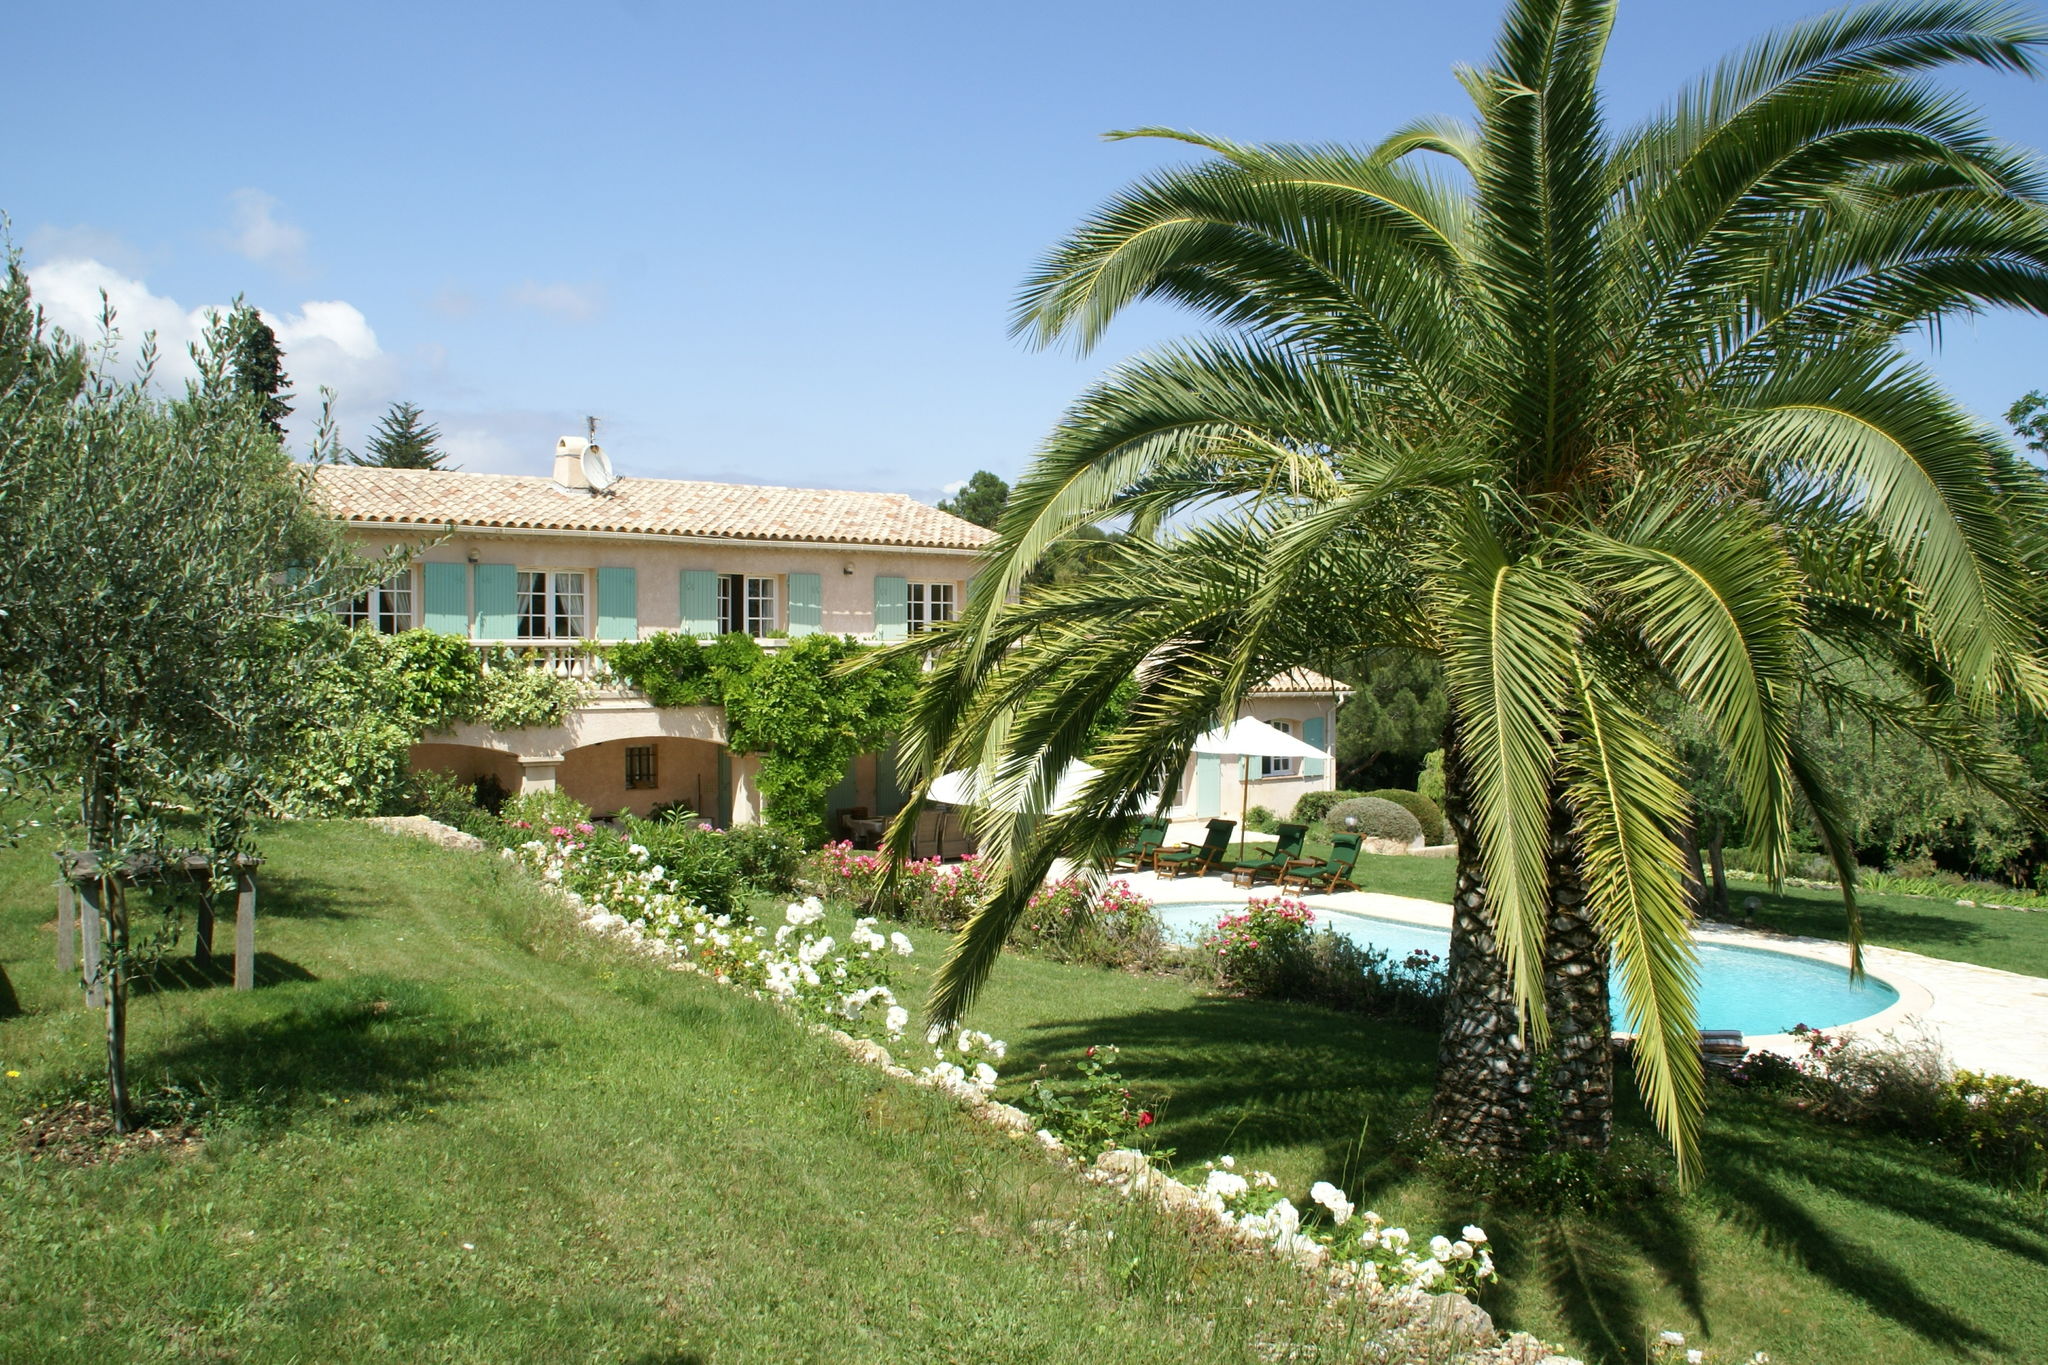 Prachtige villa met verwarmd zwembad, airco en grote omheinde tuin met privacy.